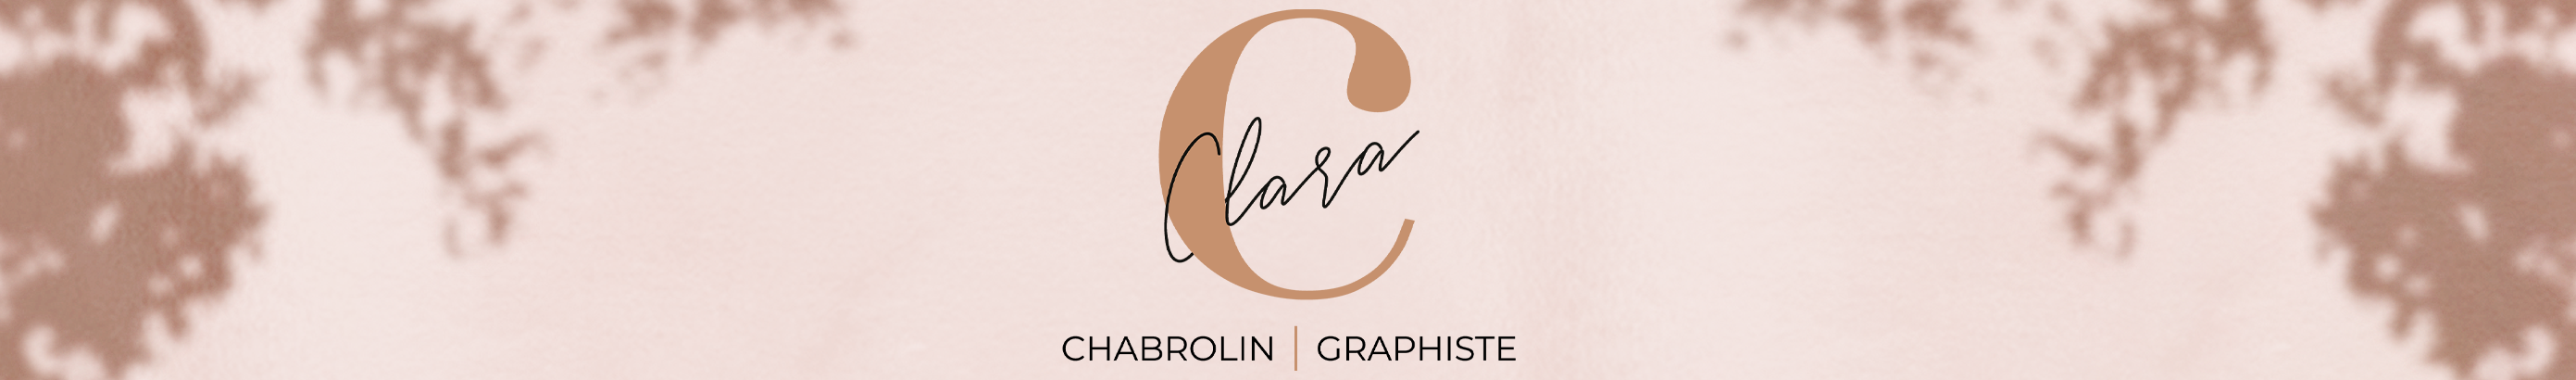 Clara Chabrolin's profile banner